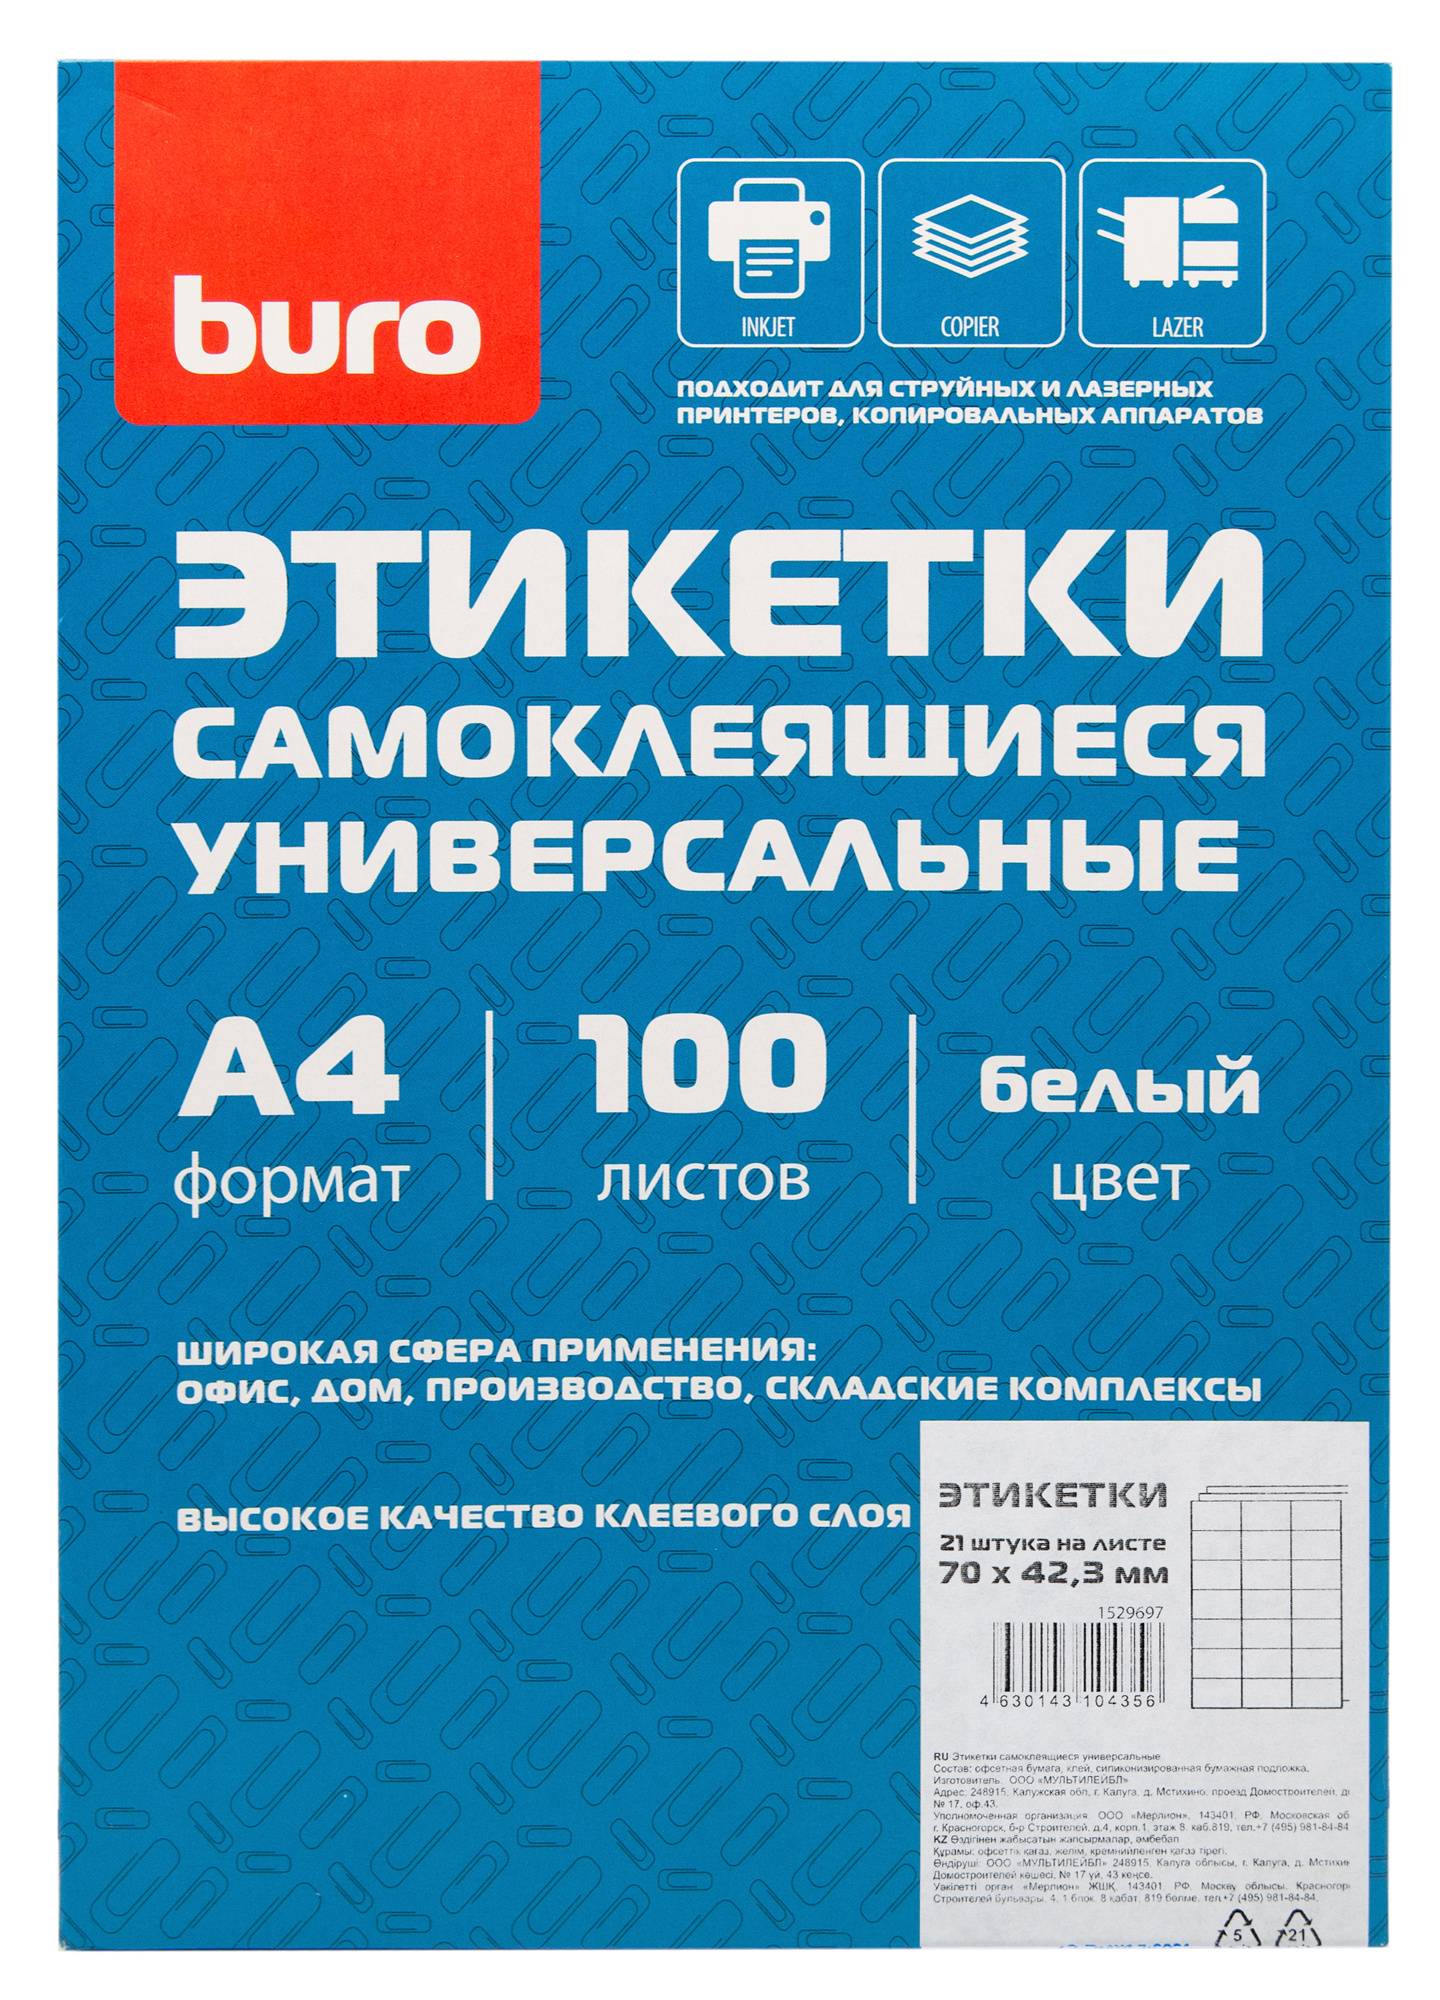 Этикетки Buro A4 100л., белый